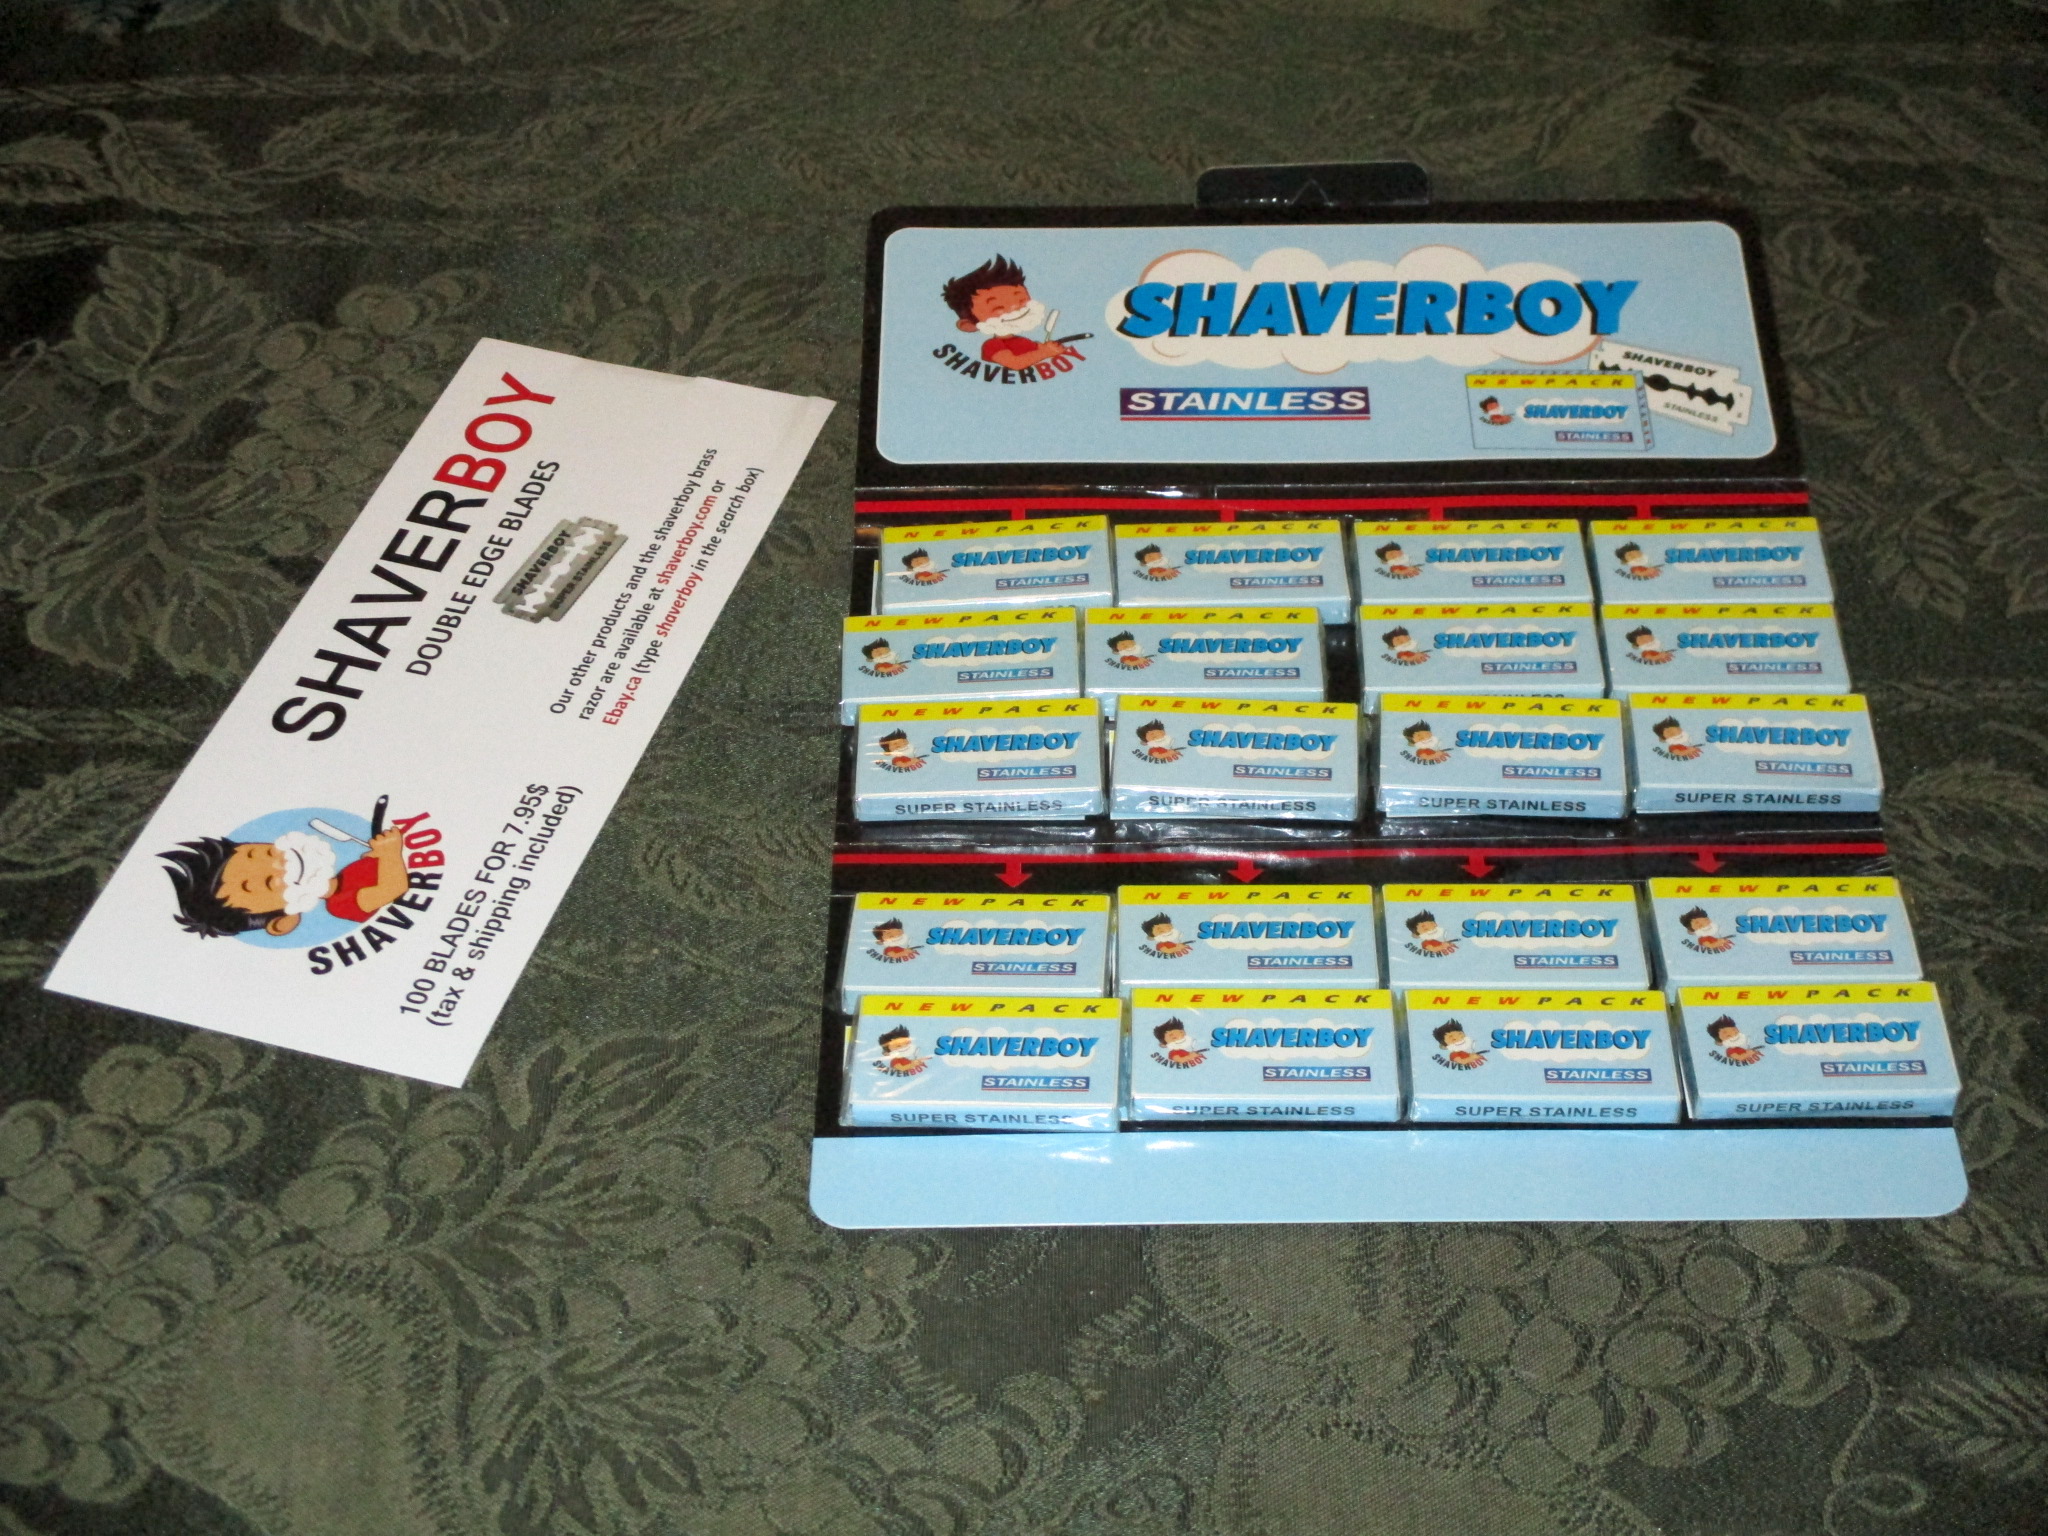 Shaverboy order_0741.JPG